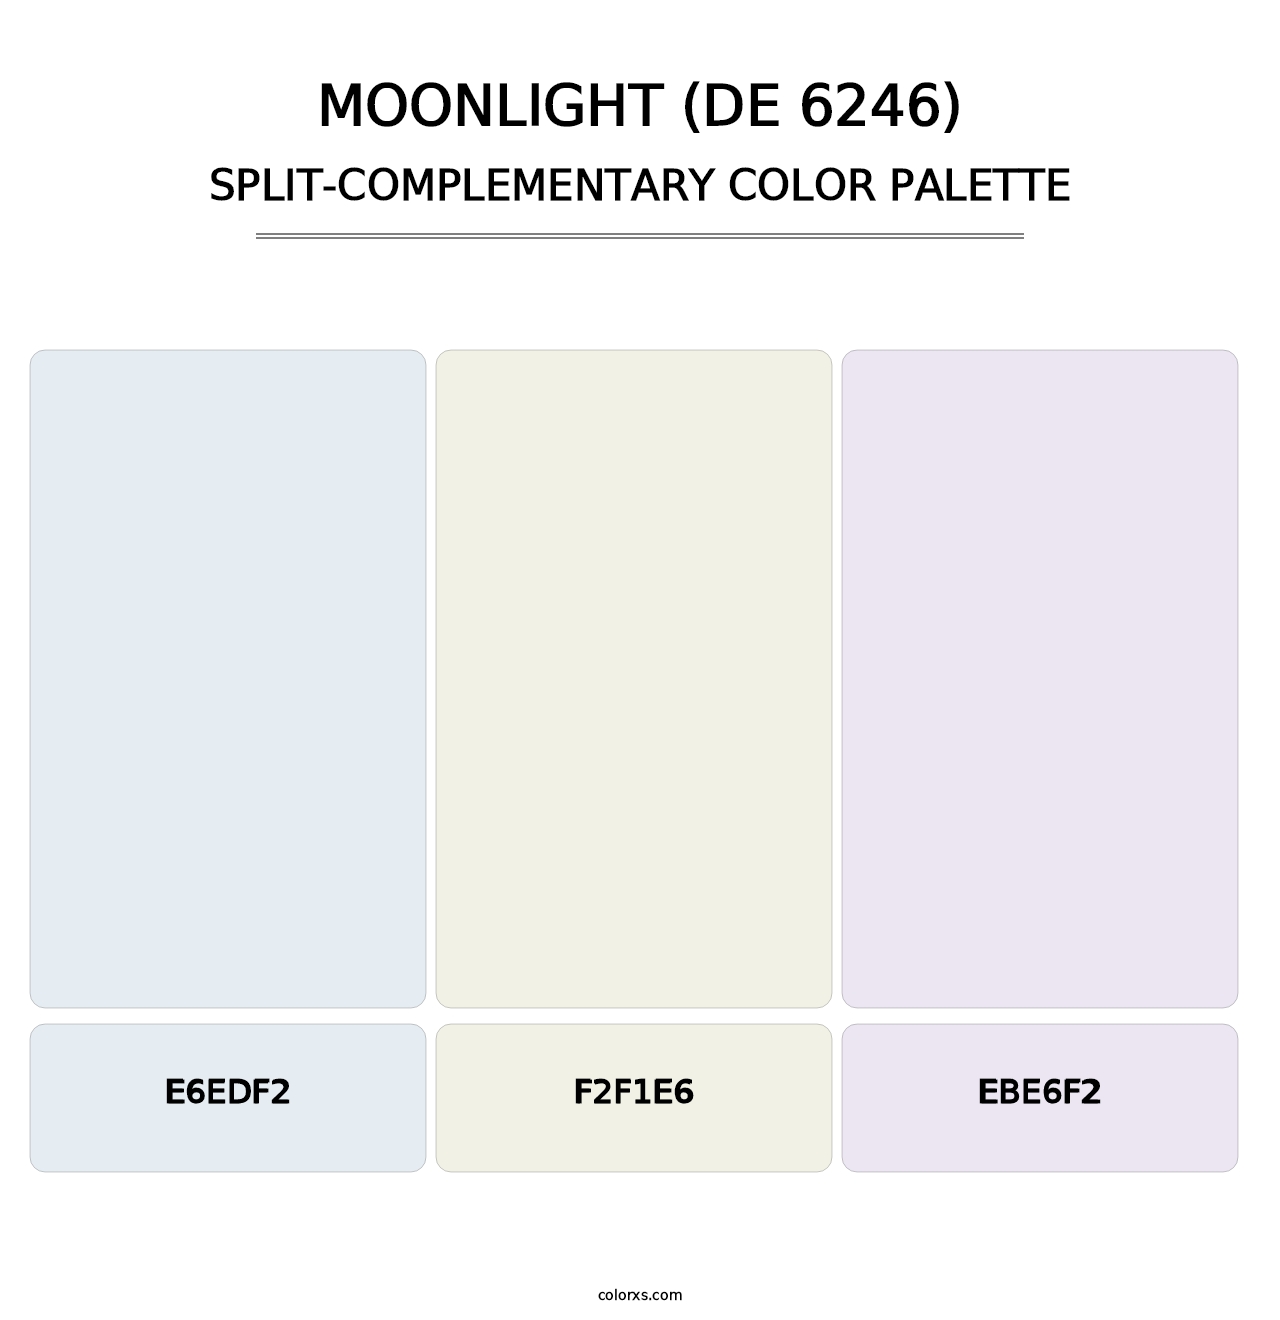 Moonlight (DE 6246) - Split-Complementary Color Palette